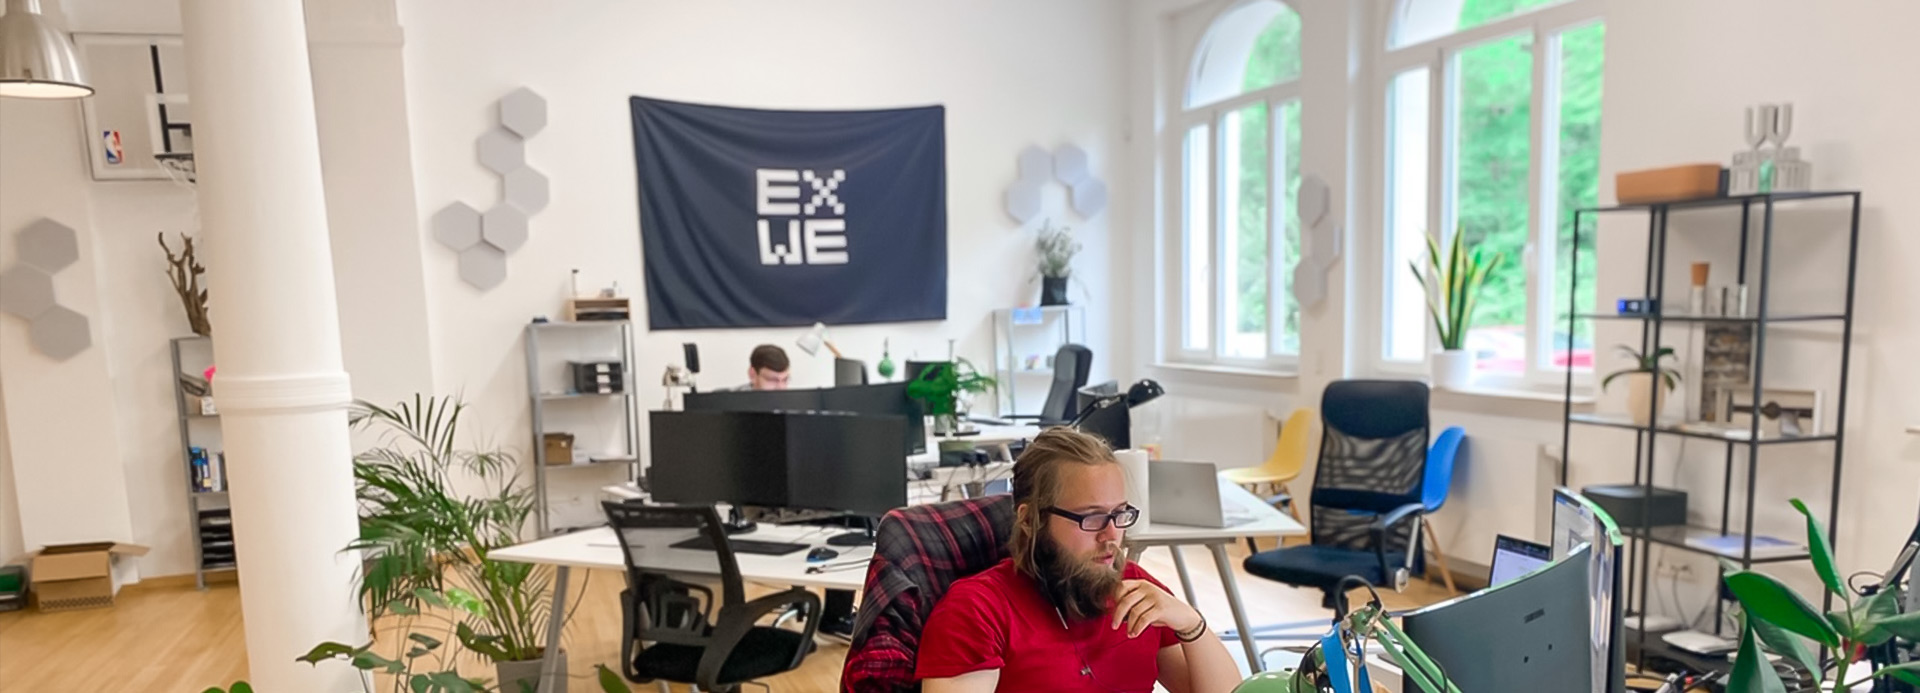 Ansicht des Büros der EXWE Softwareagentur mit Mitarbeitern Lennart & Benni